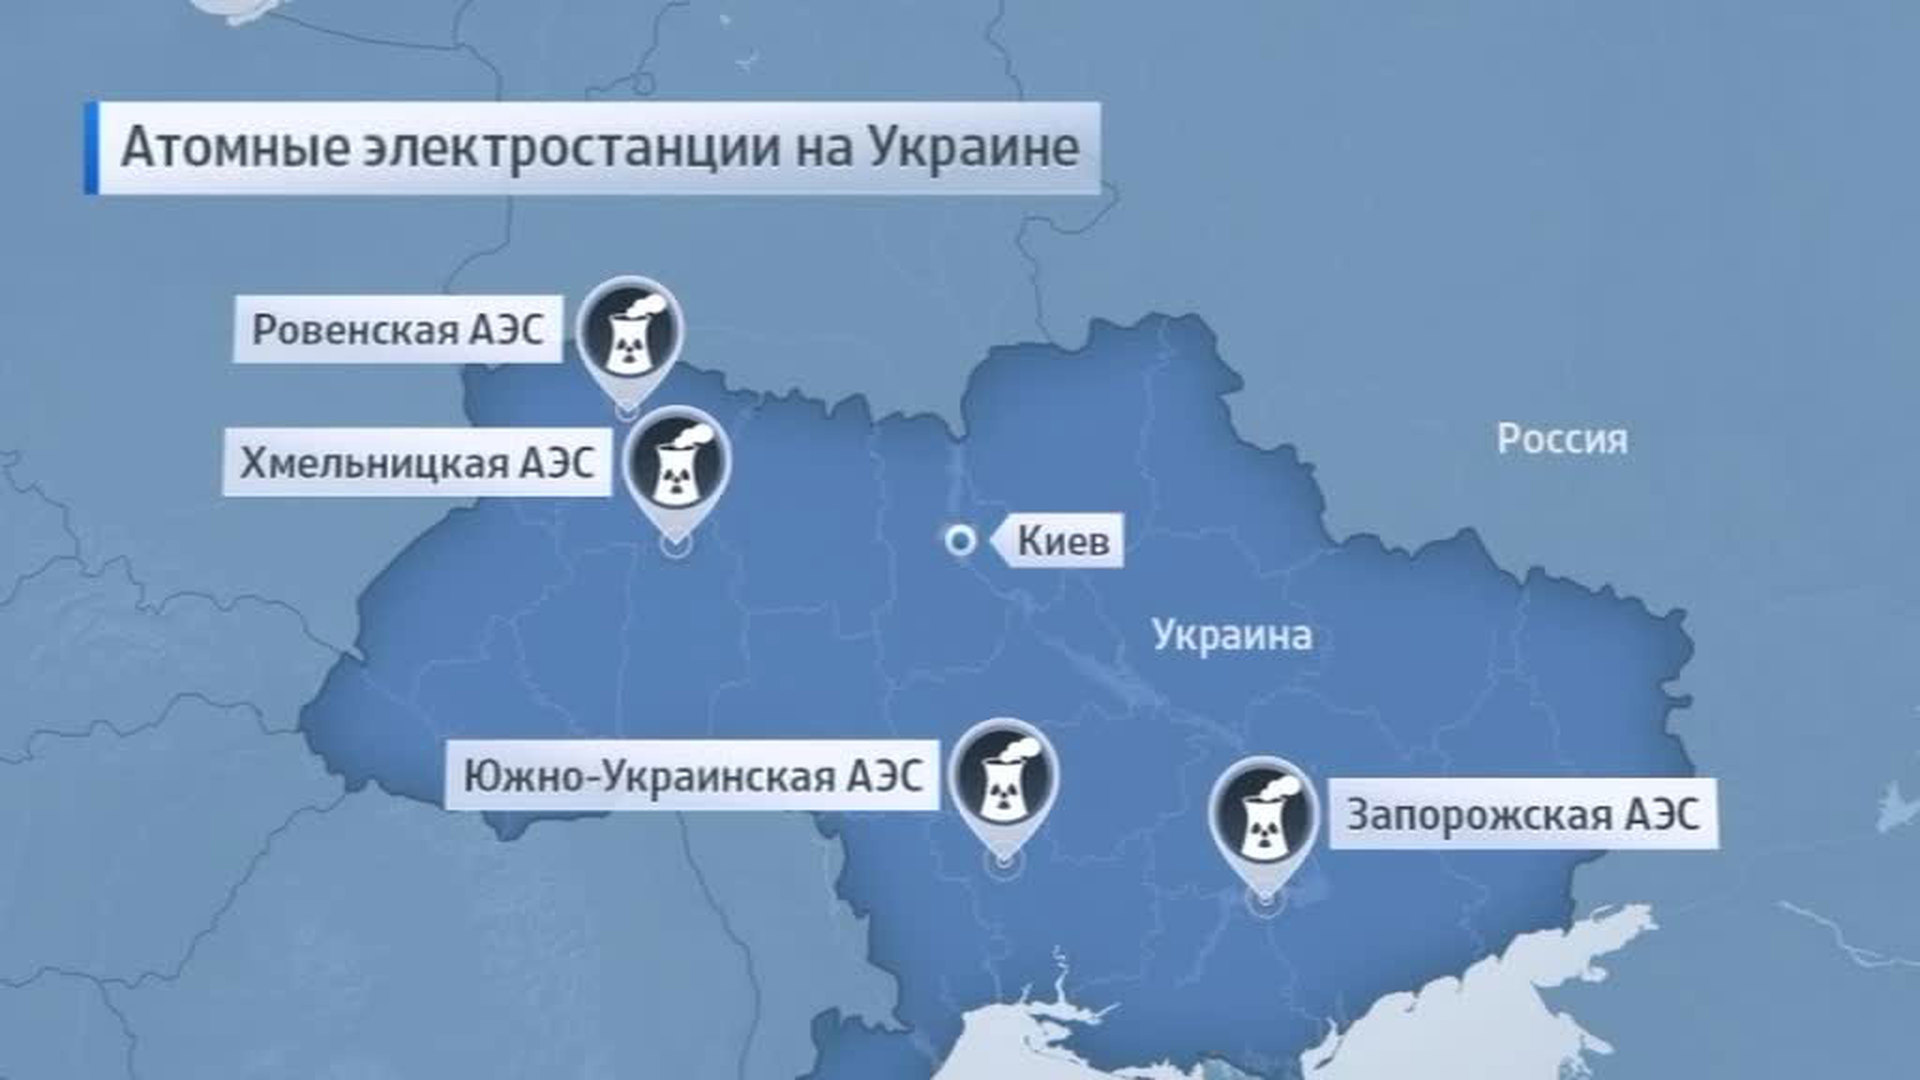 Сколько аэс на украине. АЭС Украины на карте. Атомные станции Украины на карте. Электростанции АЭС Украине карта. Запорожская АЭС на карте Украины.